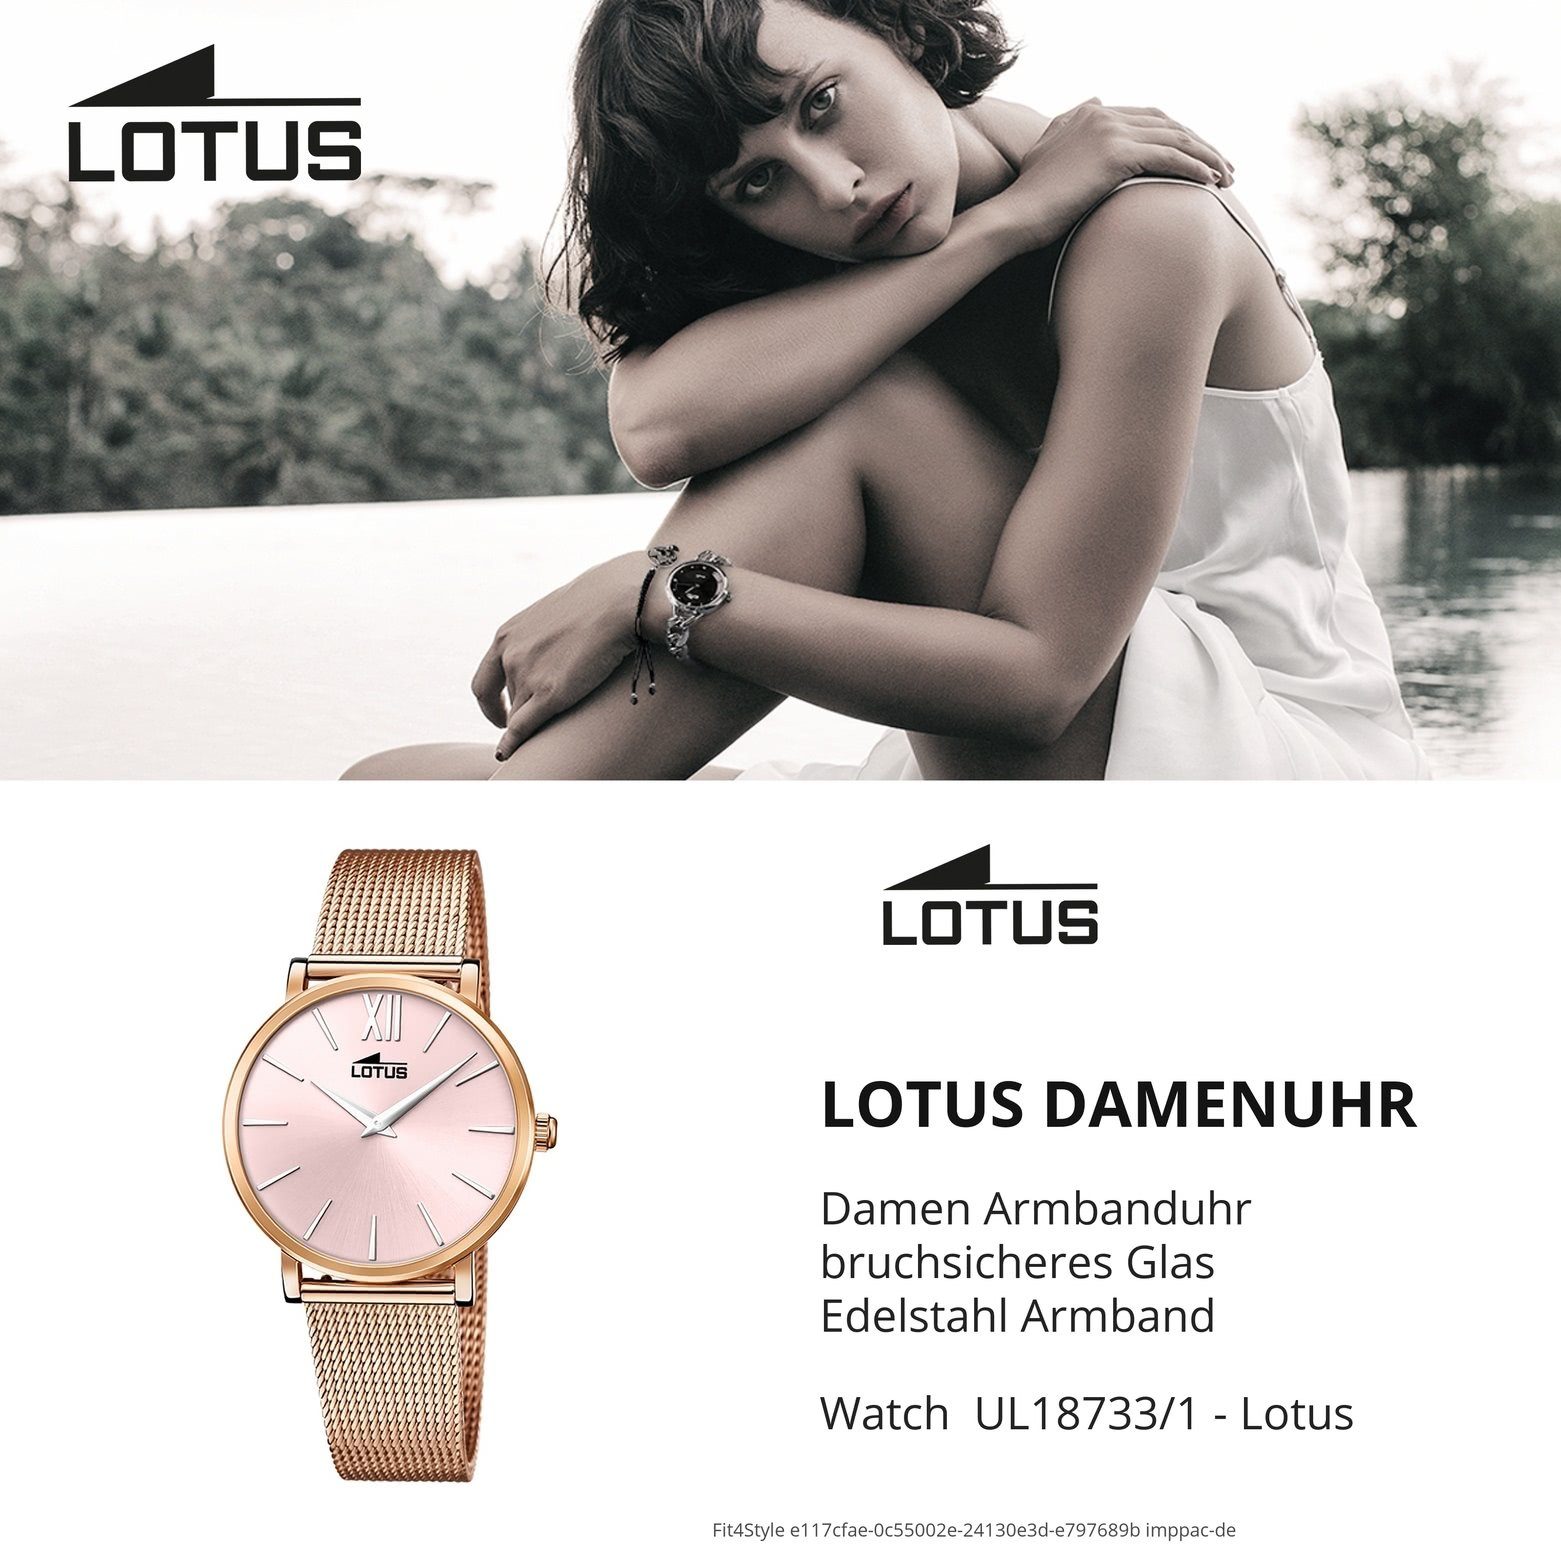 Lotus Quarzuhr Lotus Armbanduhr Edelstahlarmband Damen (ca. Smart Casual, mittel rund, rosegold Damenuhr 33mm)